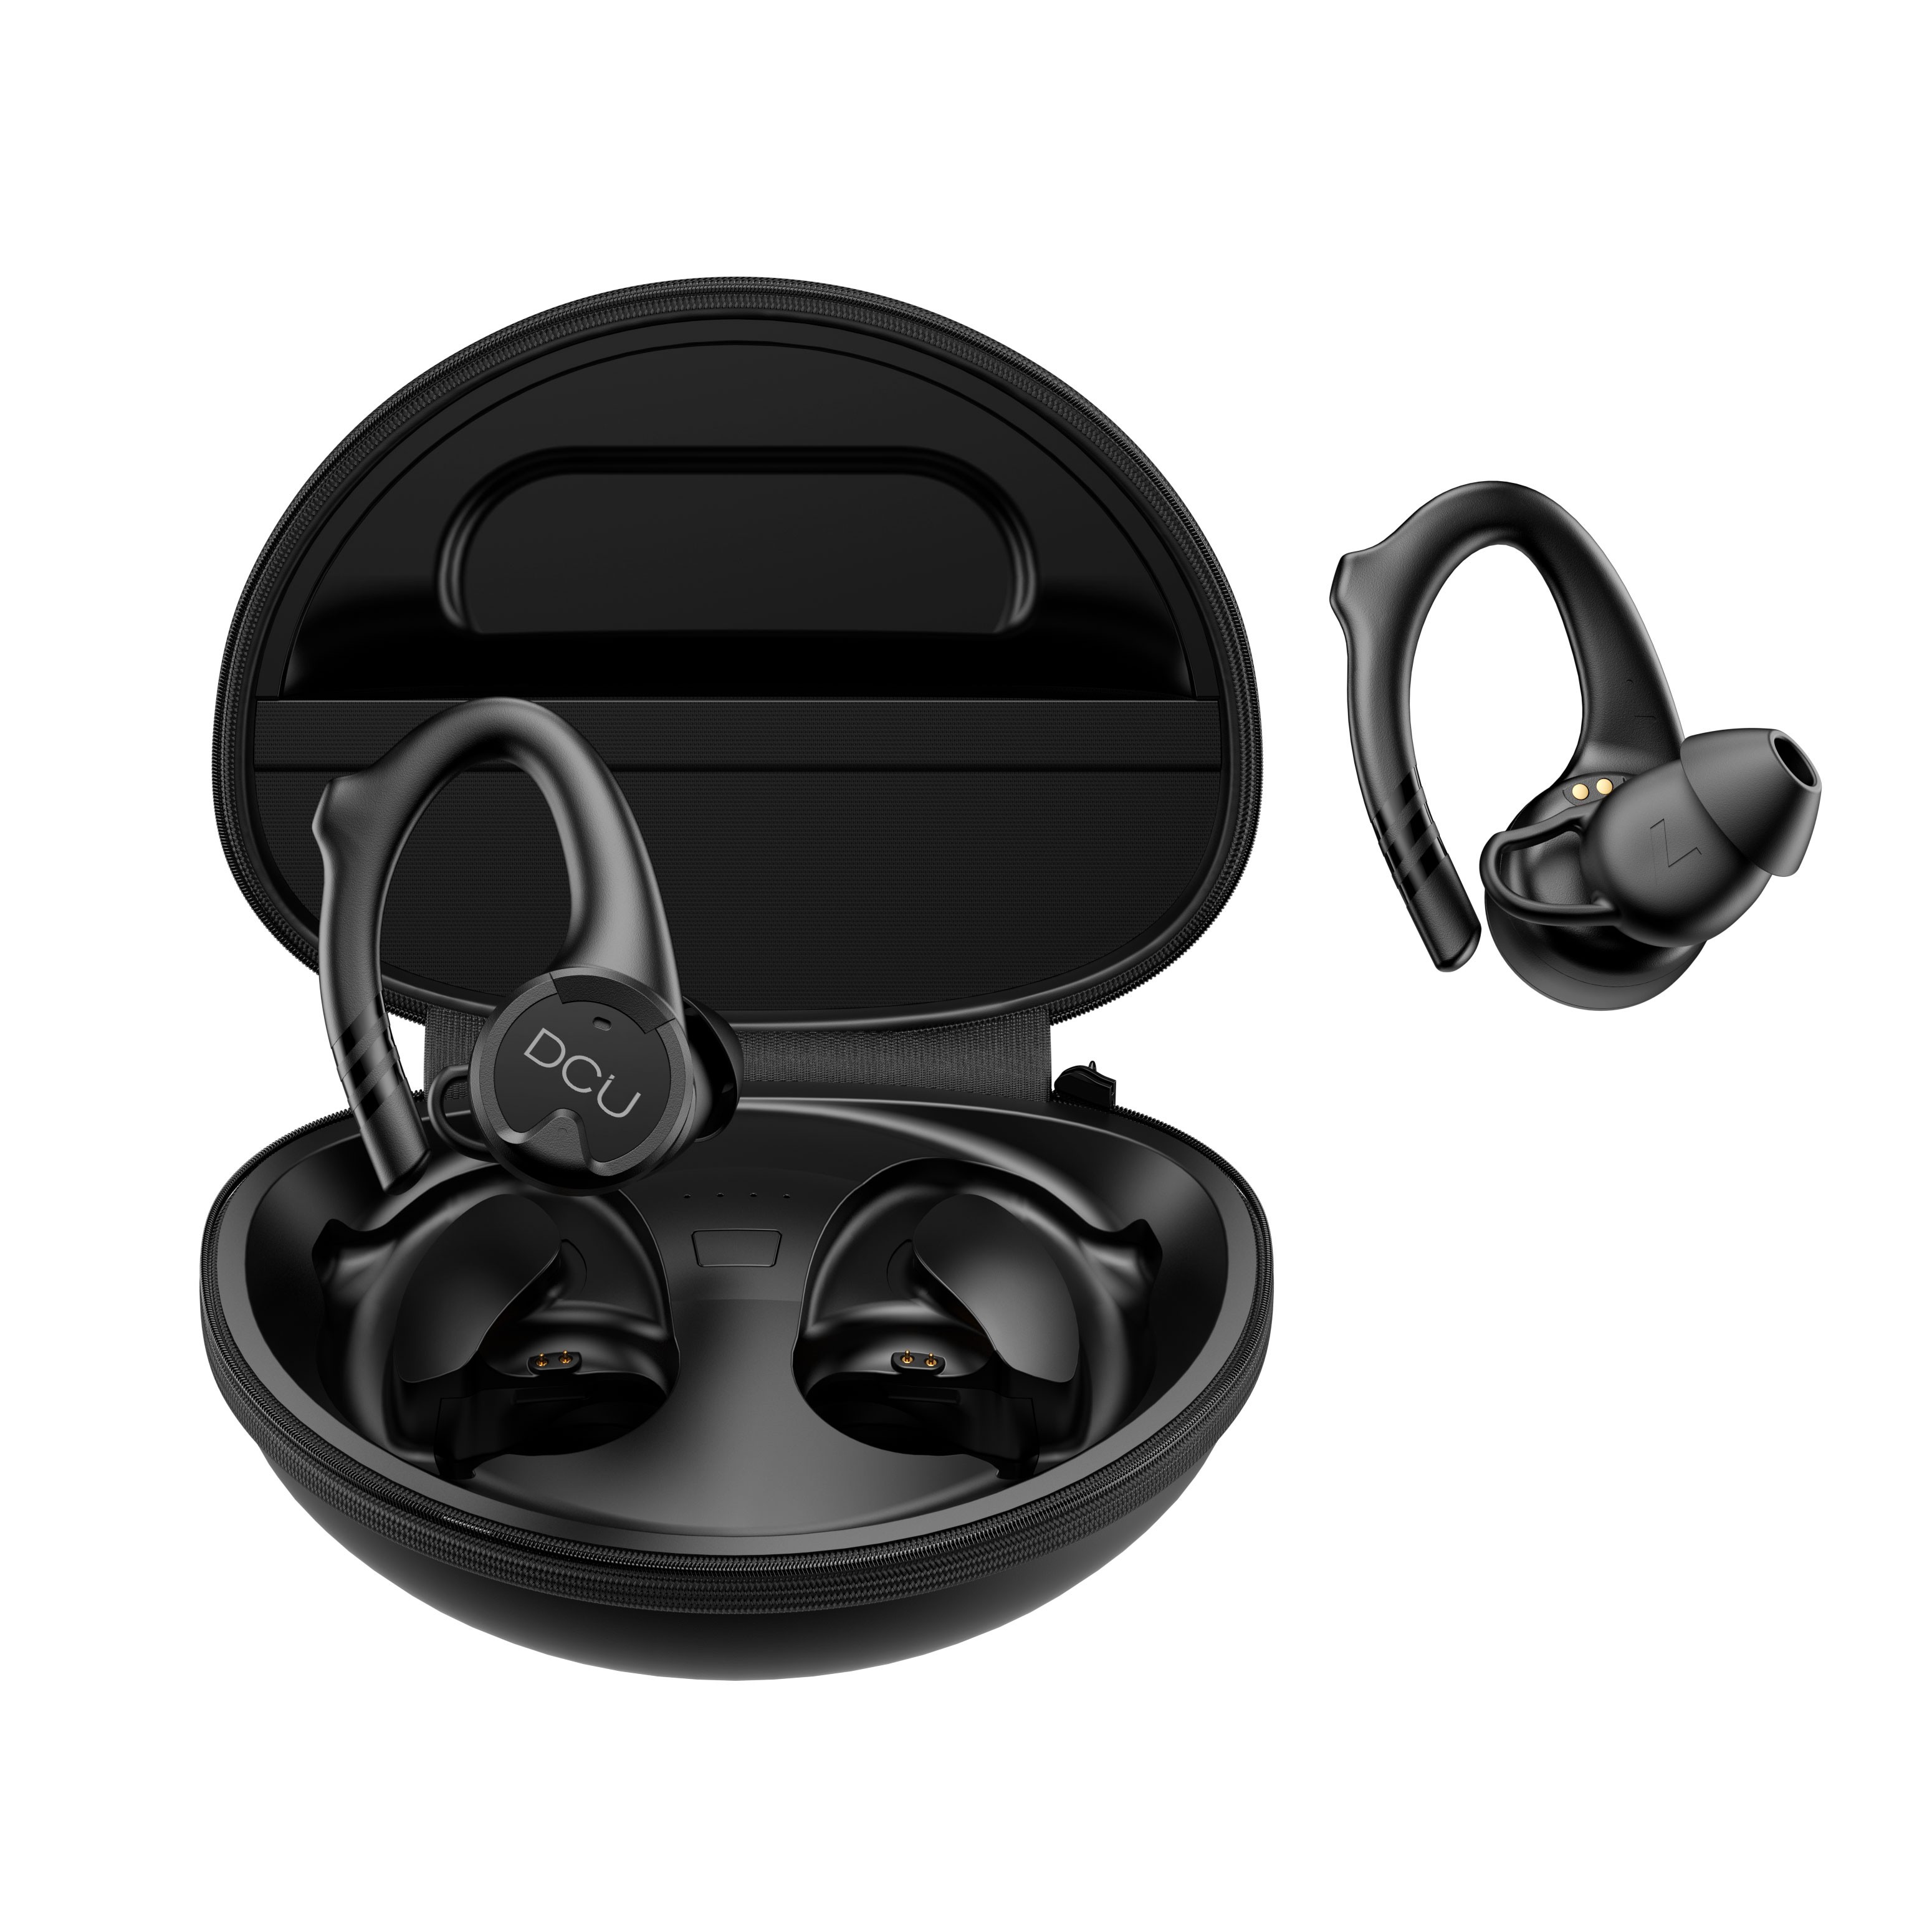 DCU Tecnologic Earbuds Bluetooth Sport Earhook IPX-6 - Écouteurs sans fil conçus pour les athlètes - Crochets d'oreille qui garantissent un ajustement sécurisé - Résistance à l'eau IPX-6 - Qualité sonore exceptionnelle - Couleur noire